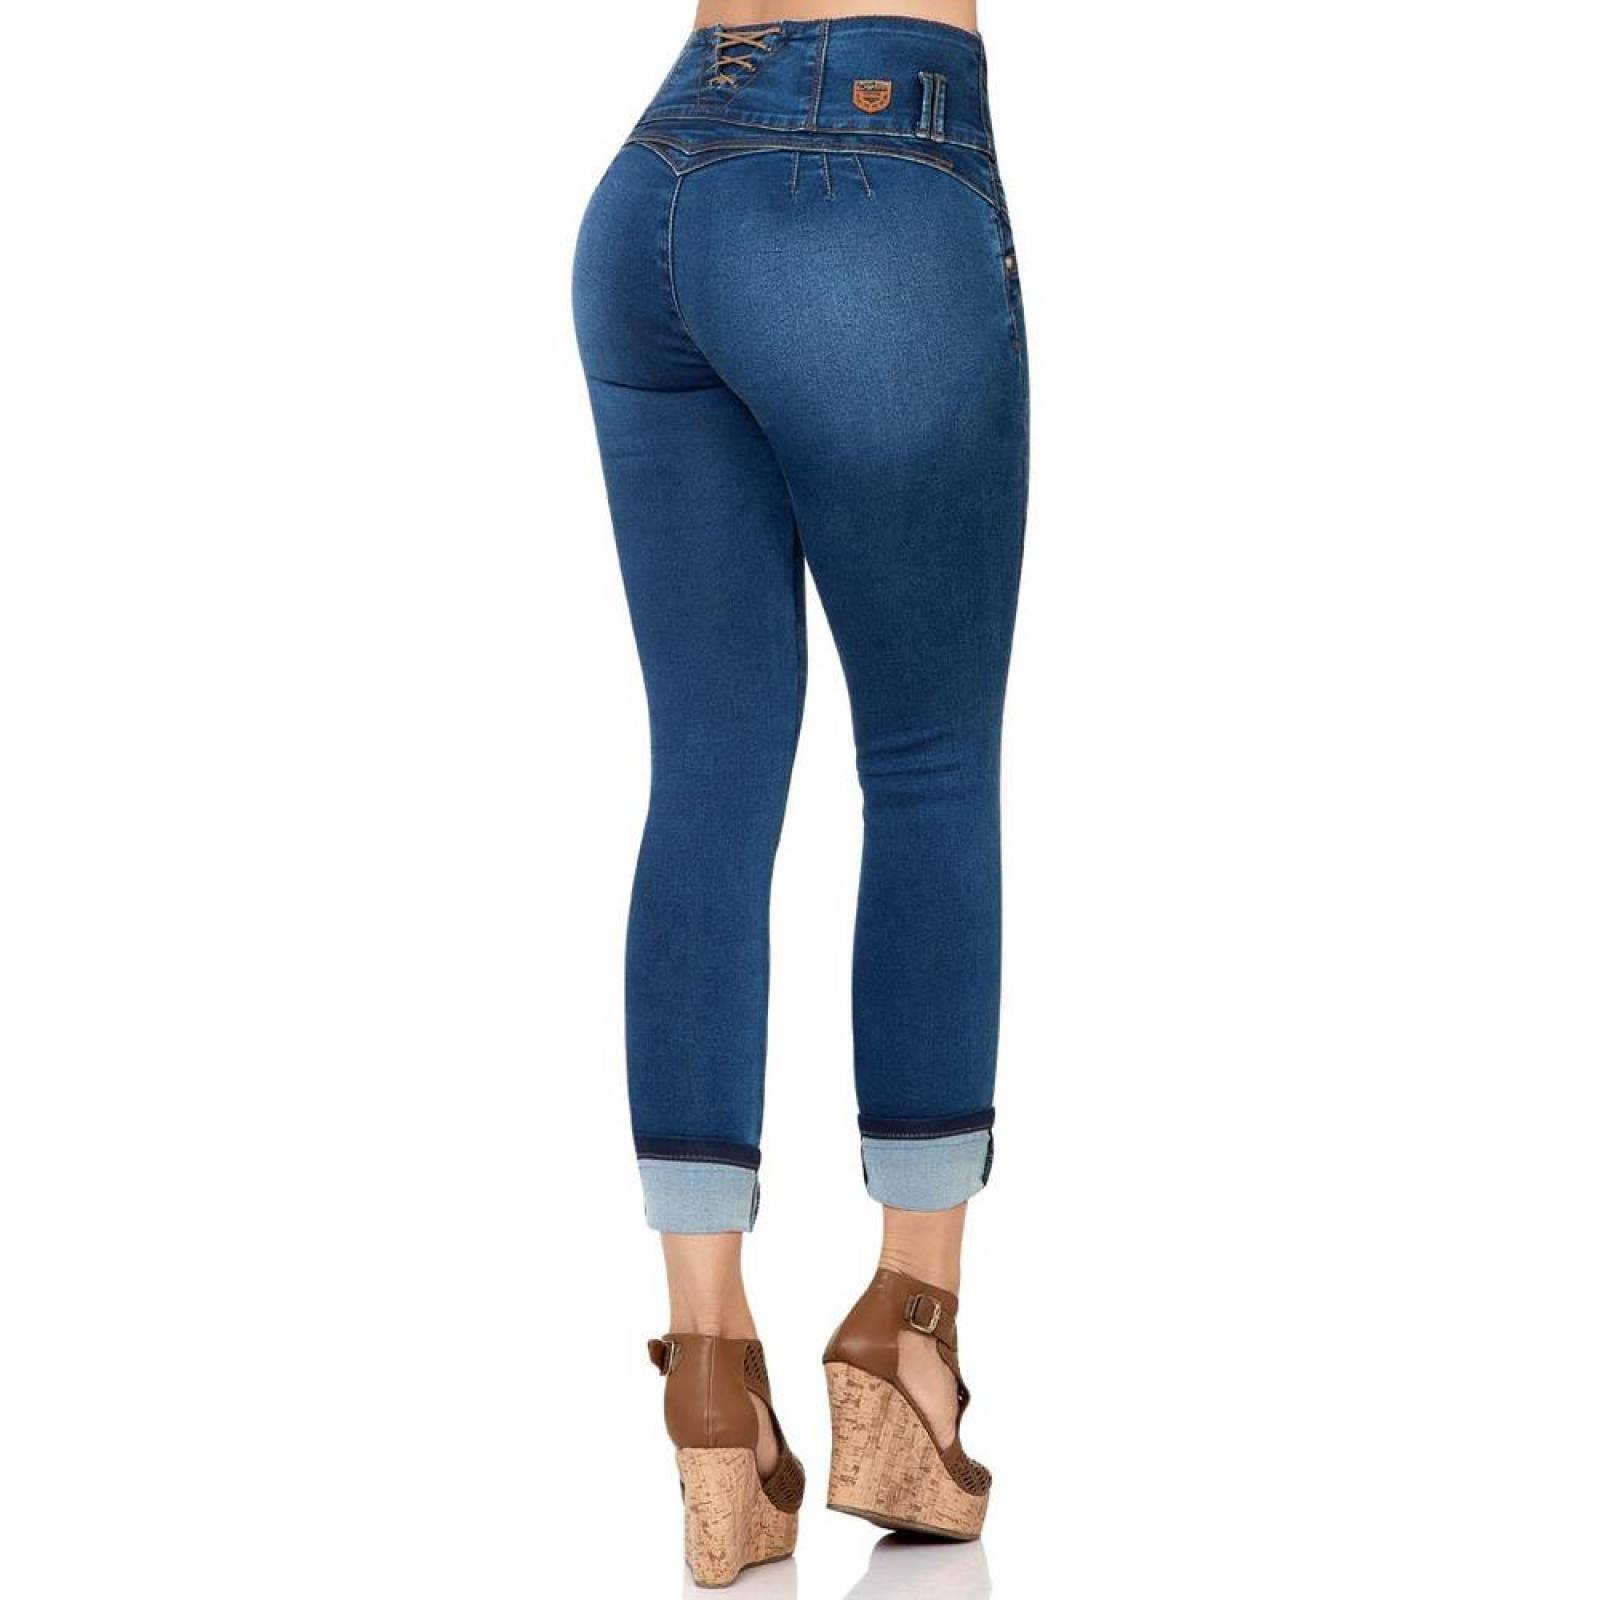 Jeans Moda Mujer Furor Stone 62105337 Mezclilla Stretch 